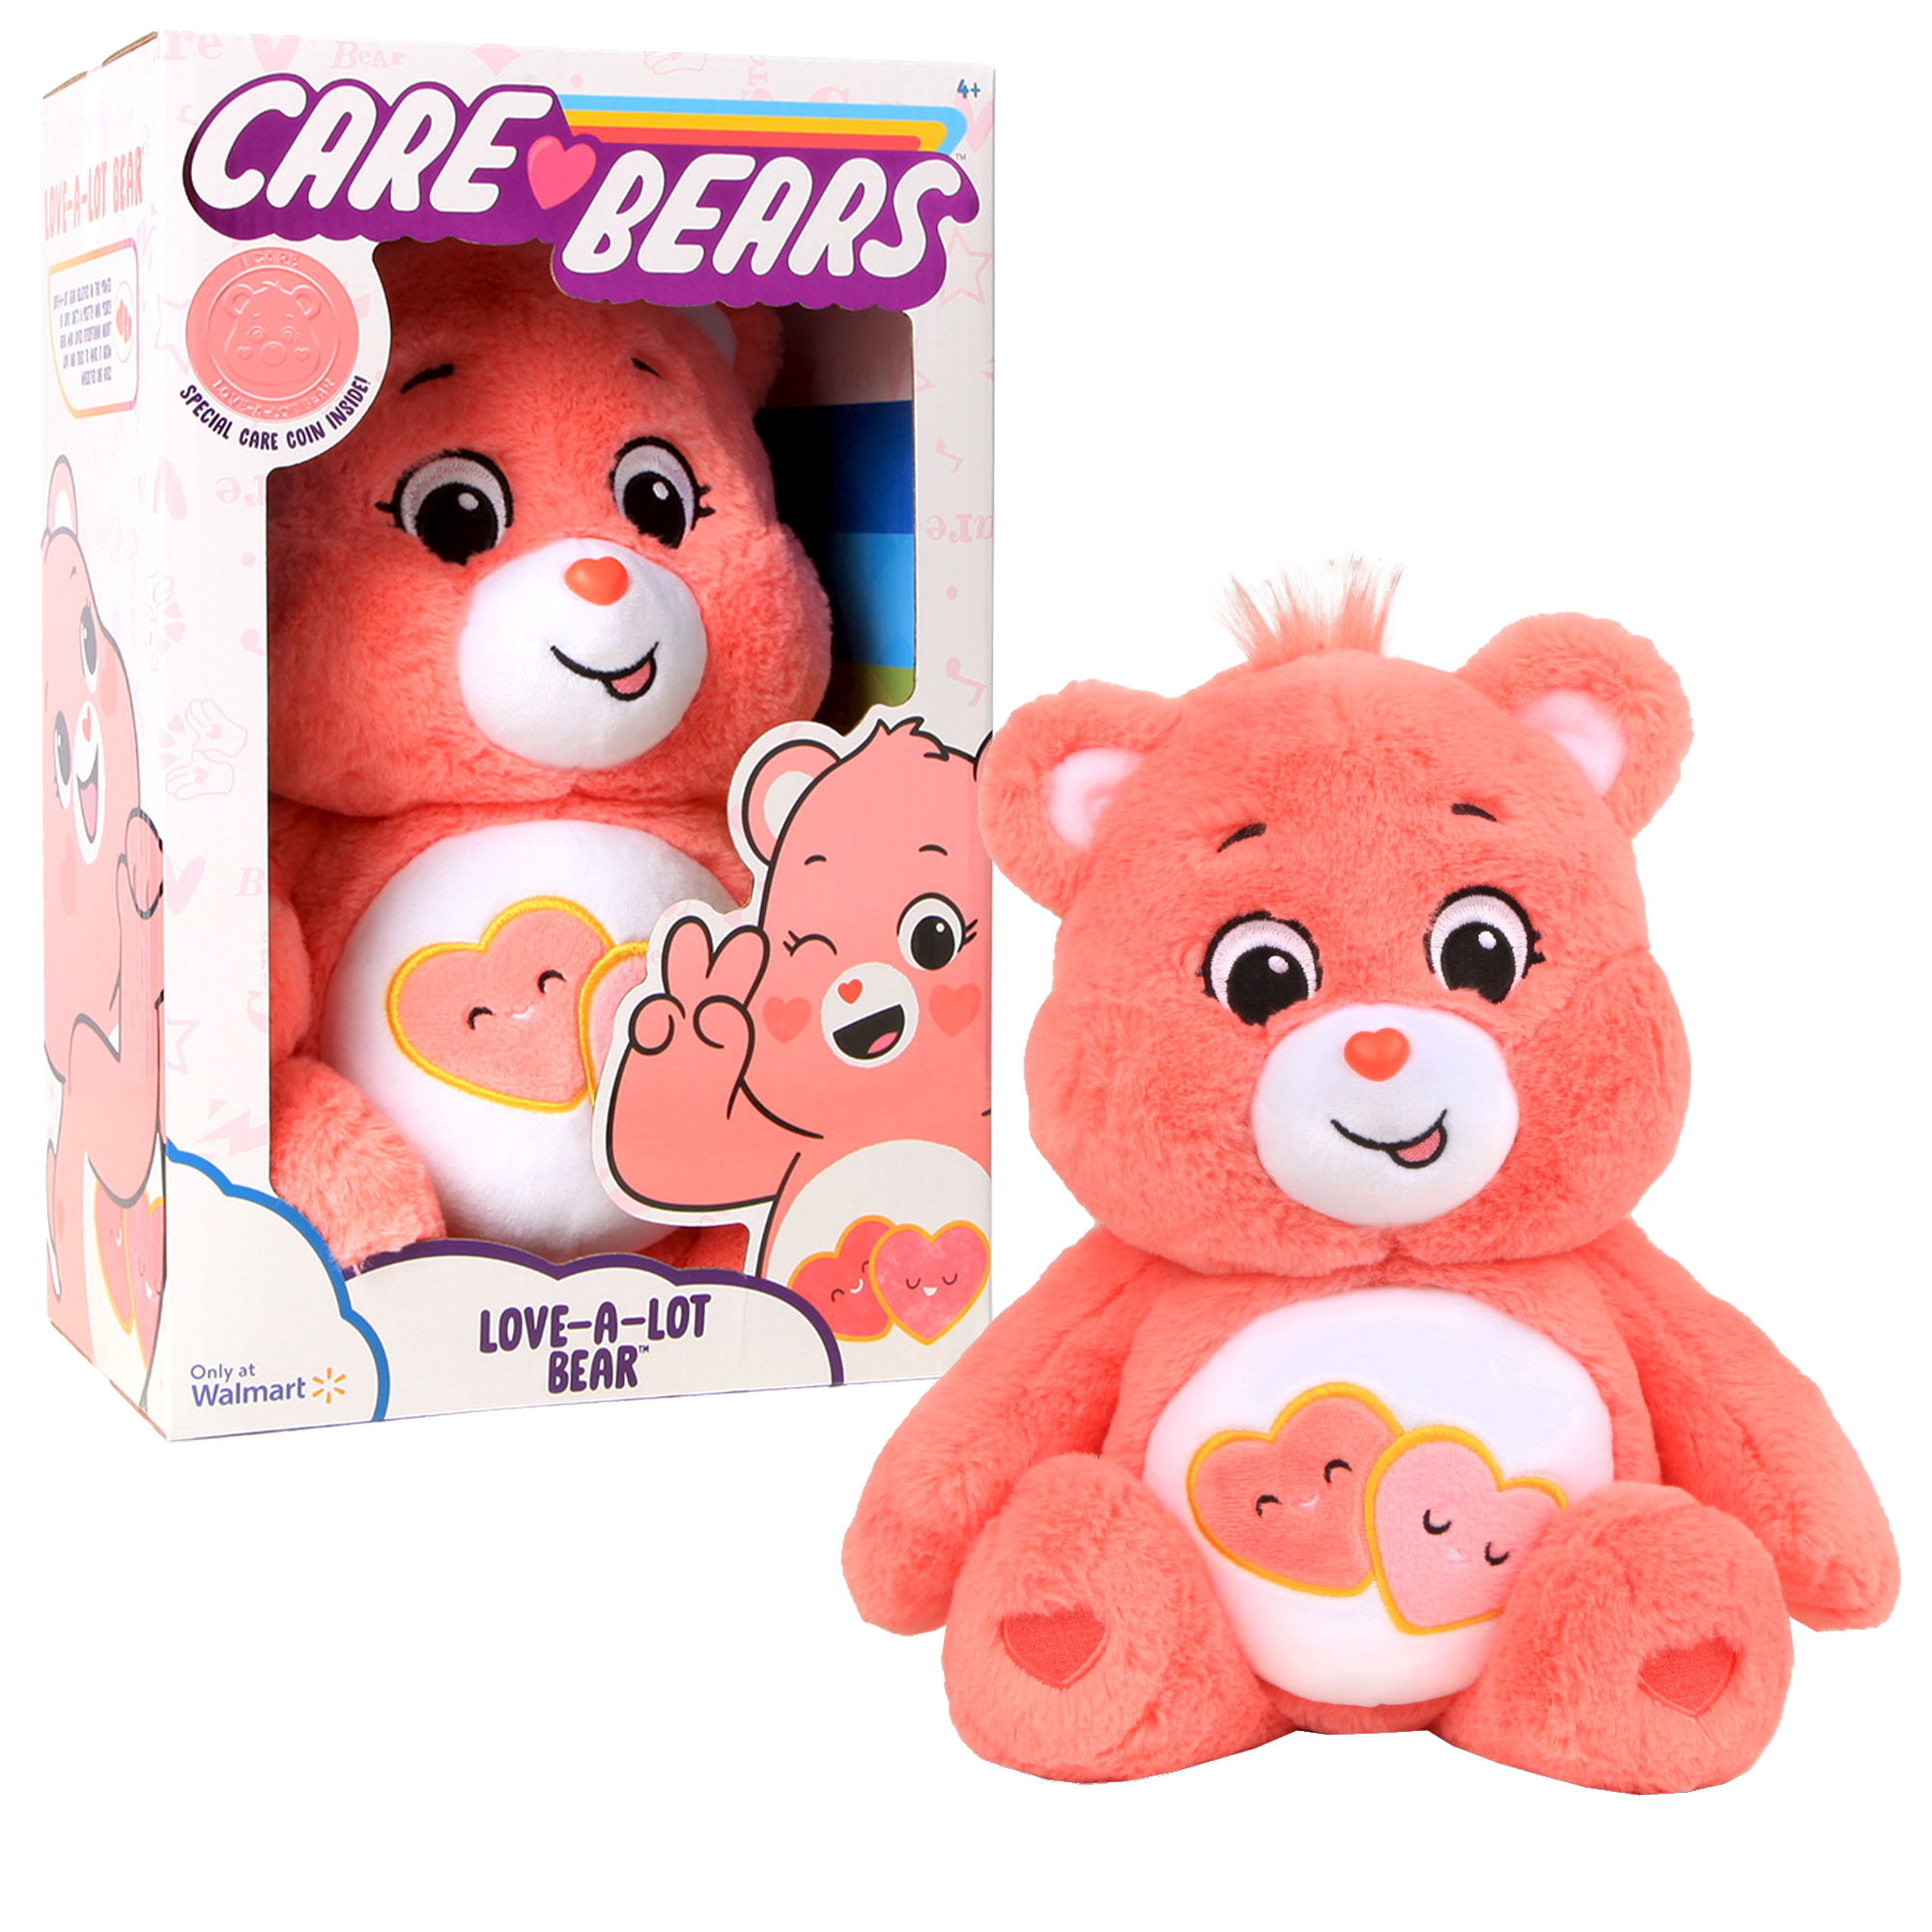 Care Bears: Love-A-Lot Bear